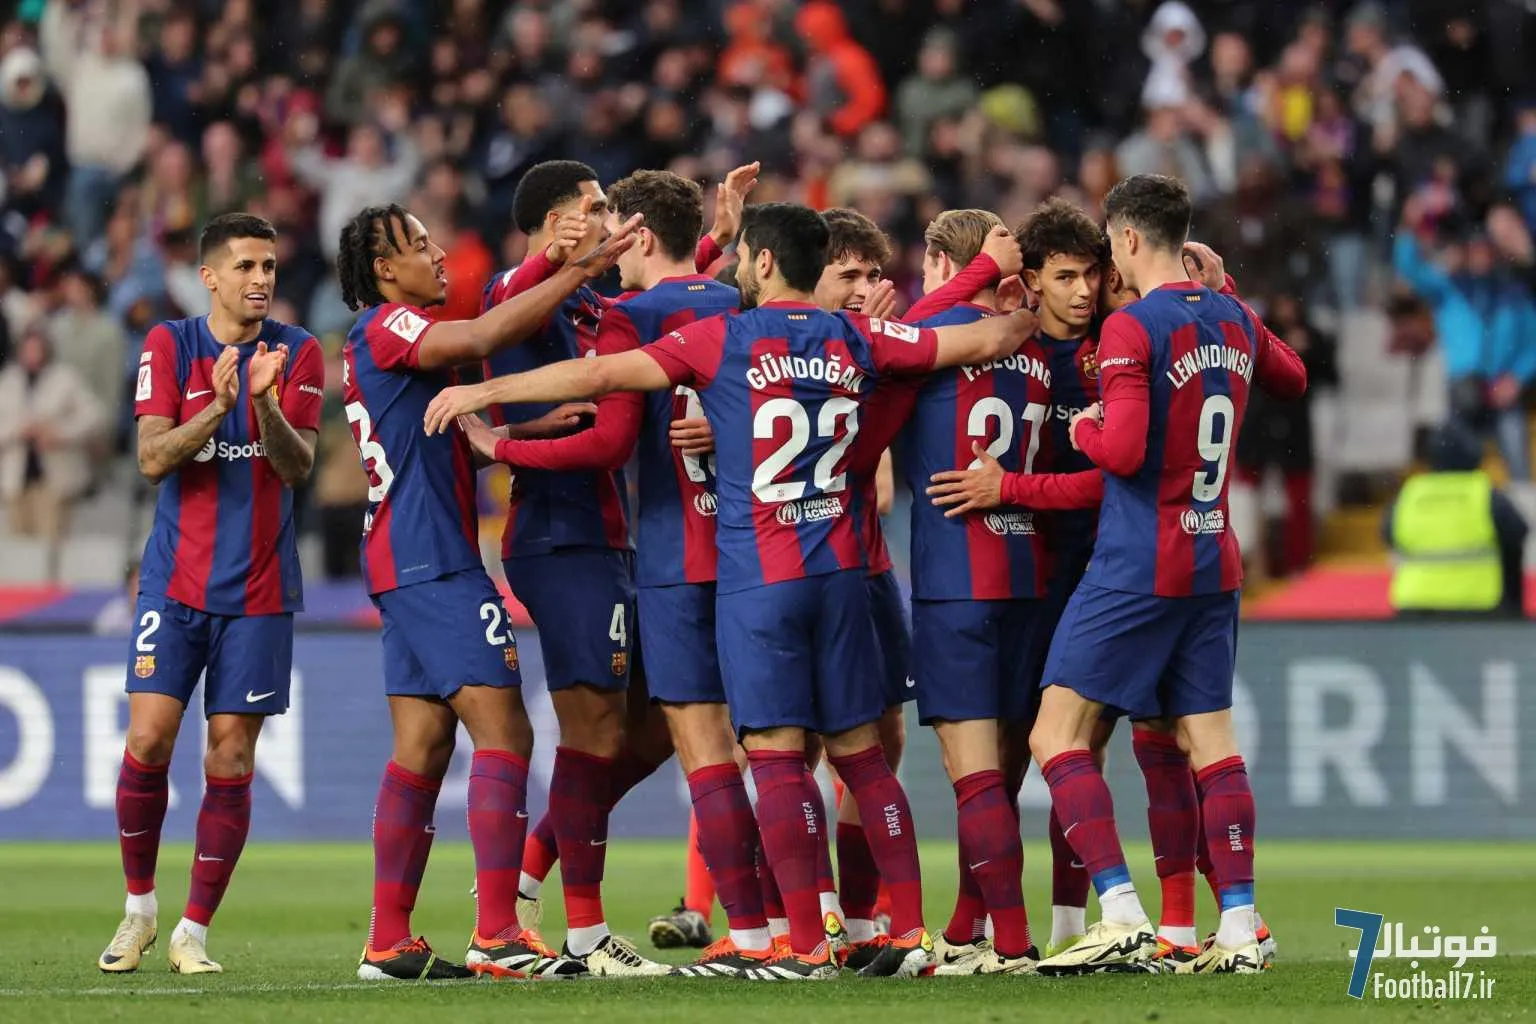 تحلیل بازی بارسلونا-ختافه: بزرگترین پیروزی بارسلونا بعد از 5 ماه، چگونه حاصل شد؟